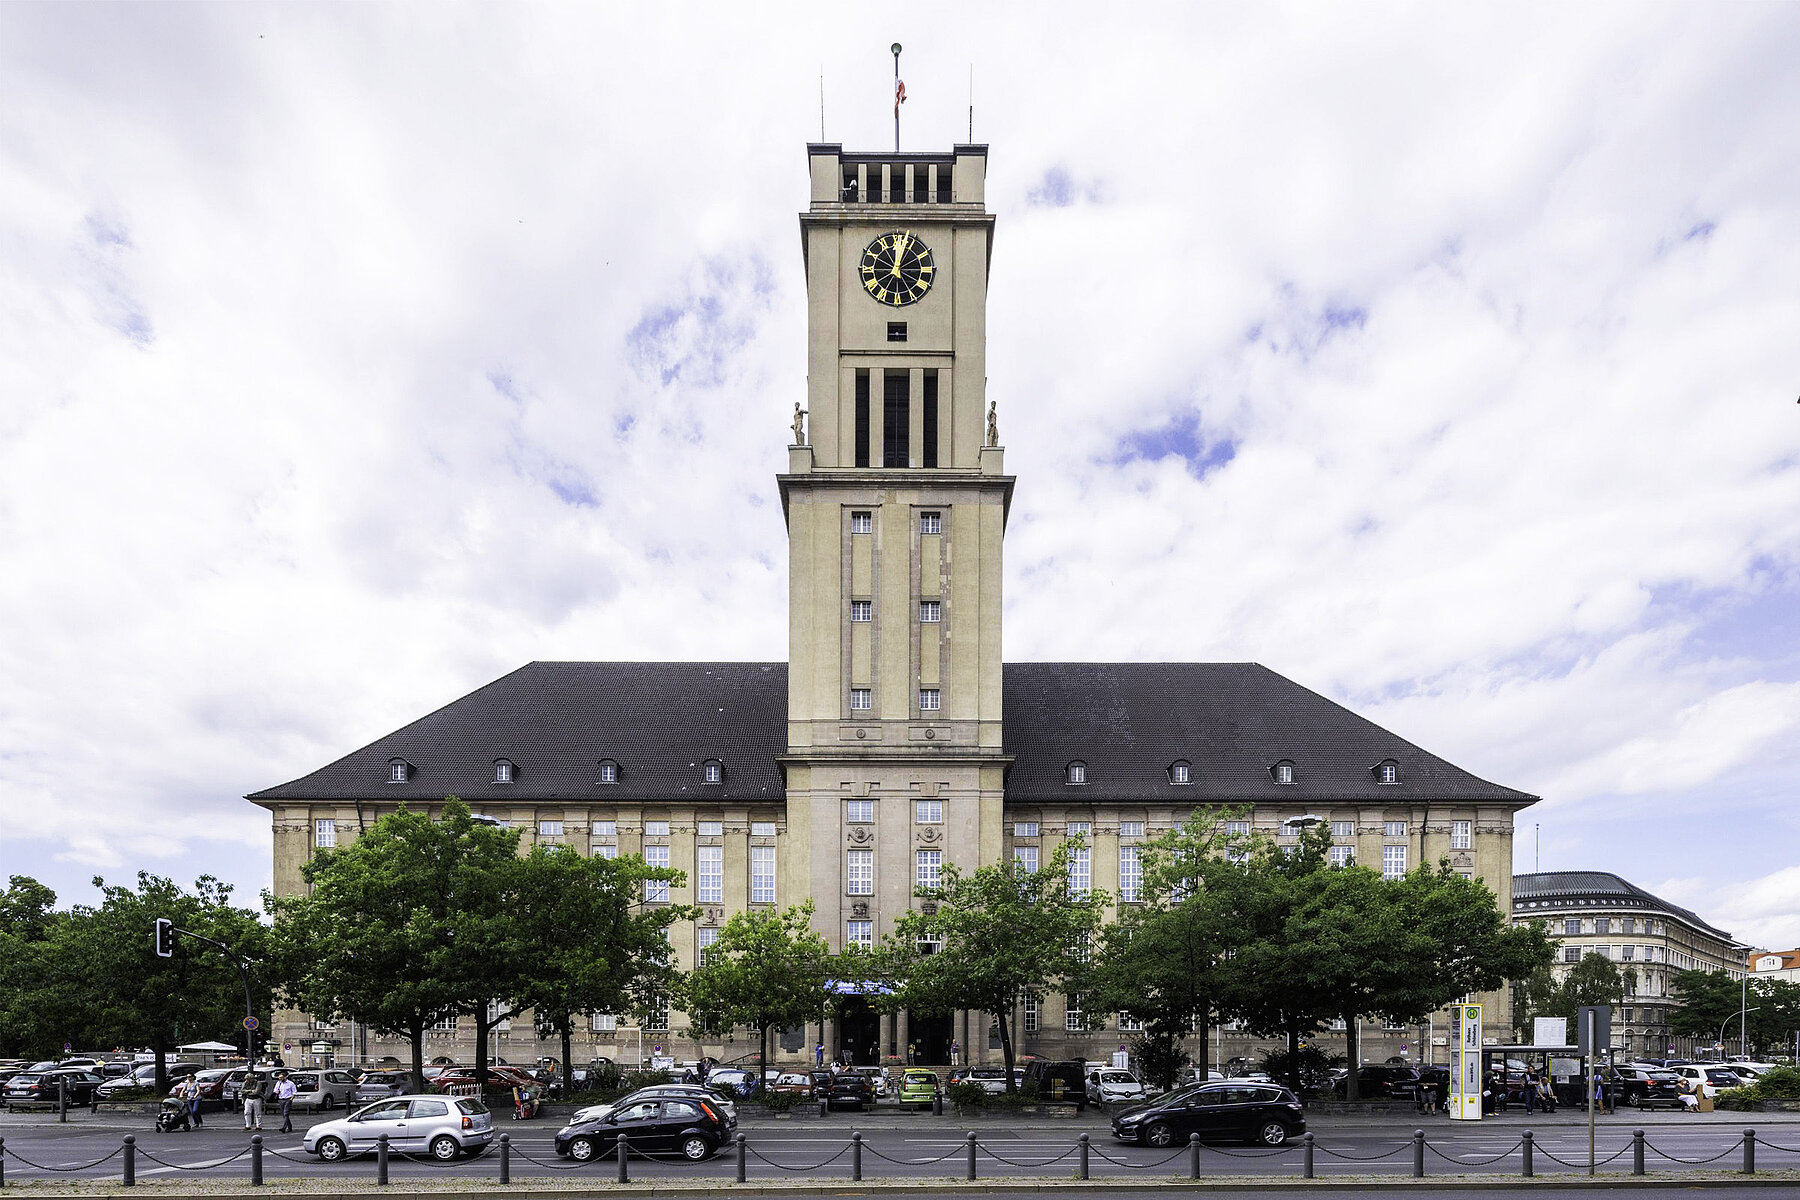 Das Rathaus Schöneberg mit einer Straße und Autos im Vordergrund.